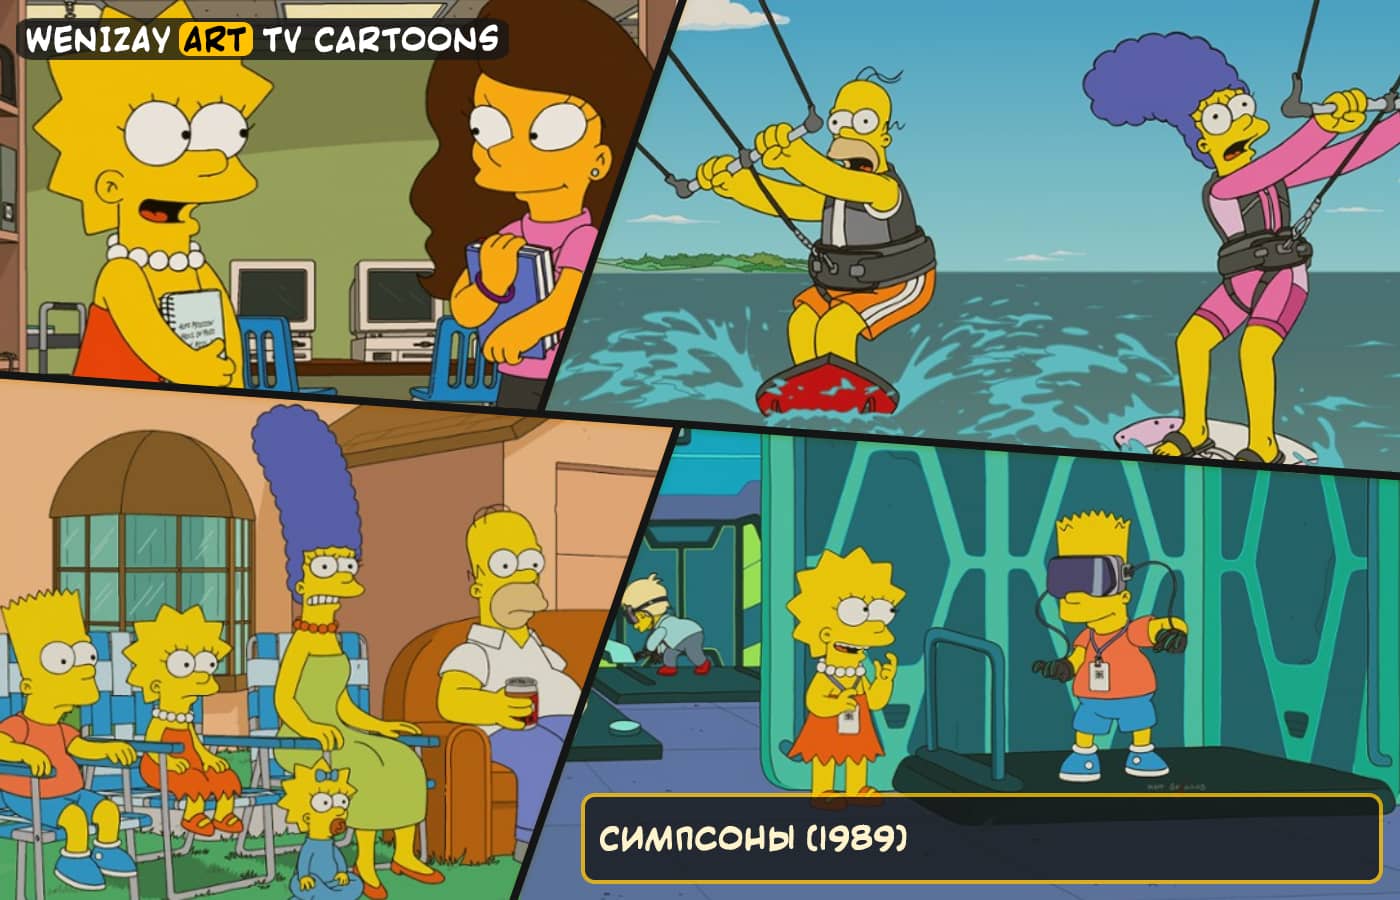 Симпсоны, Симпсоны новыые, Симпсоны все серии, все сезоны Симпсоны